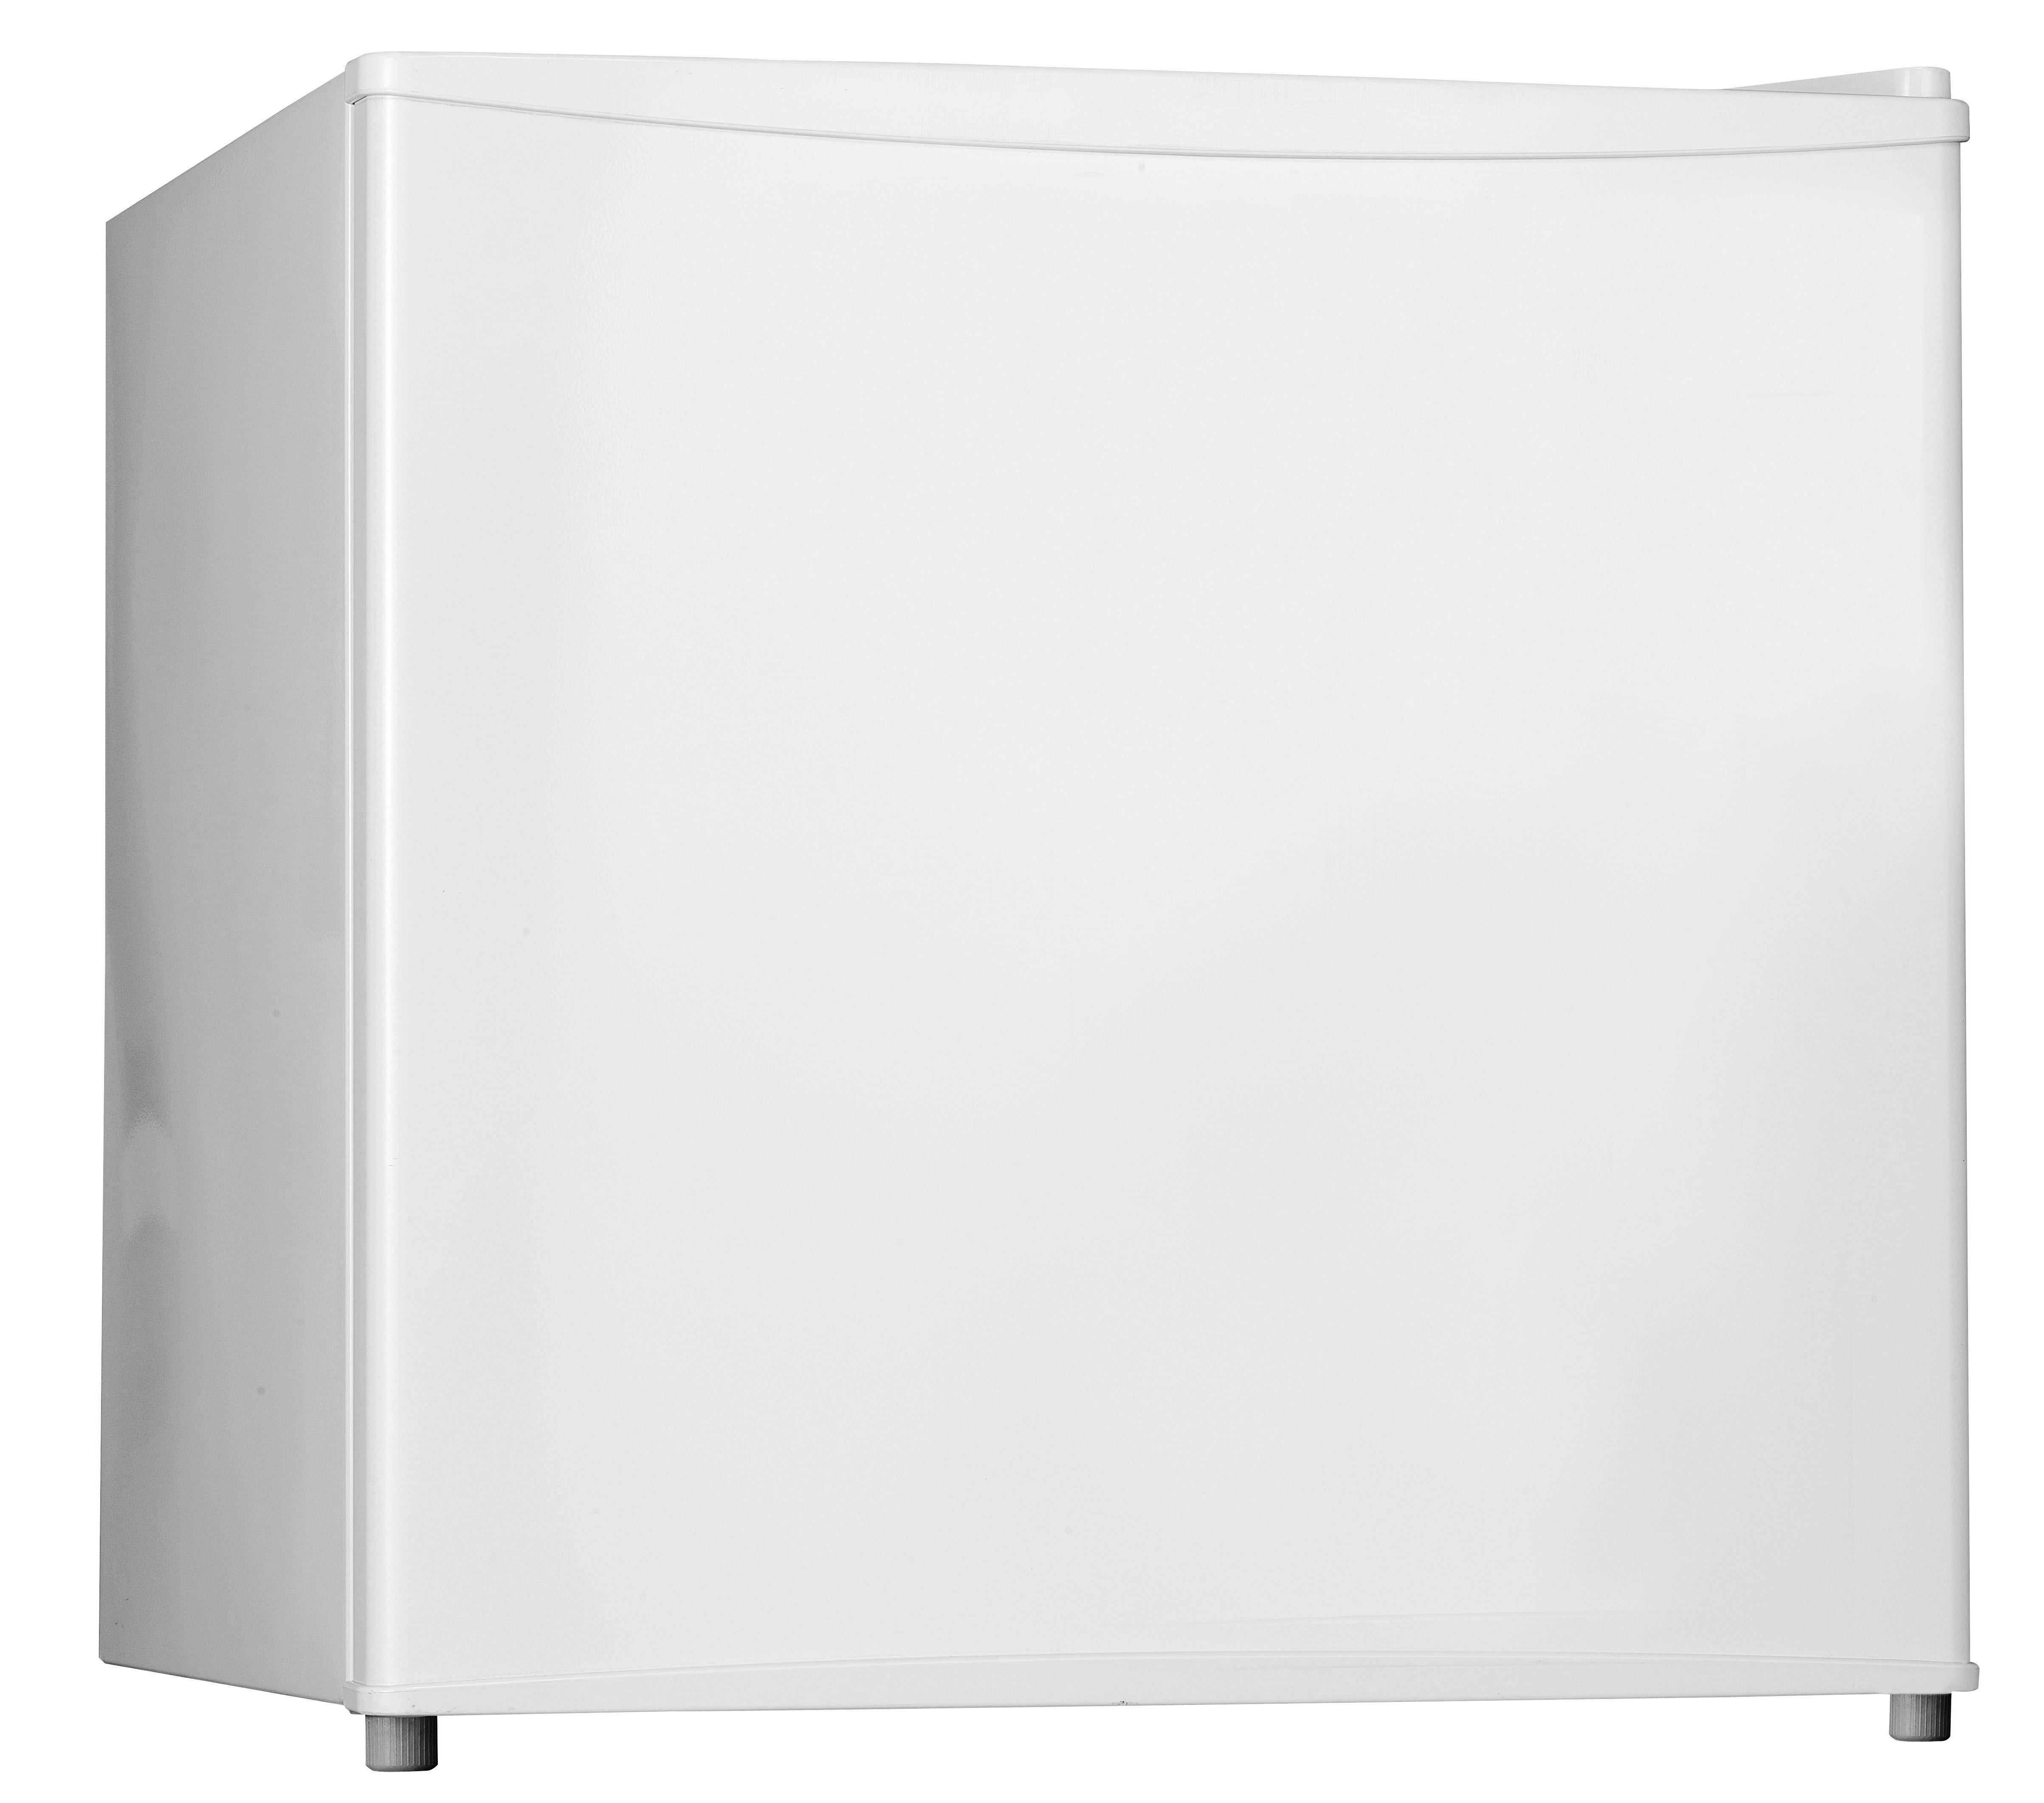 Mini-Kühlschrank online kaufen